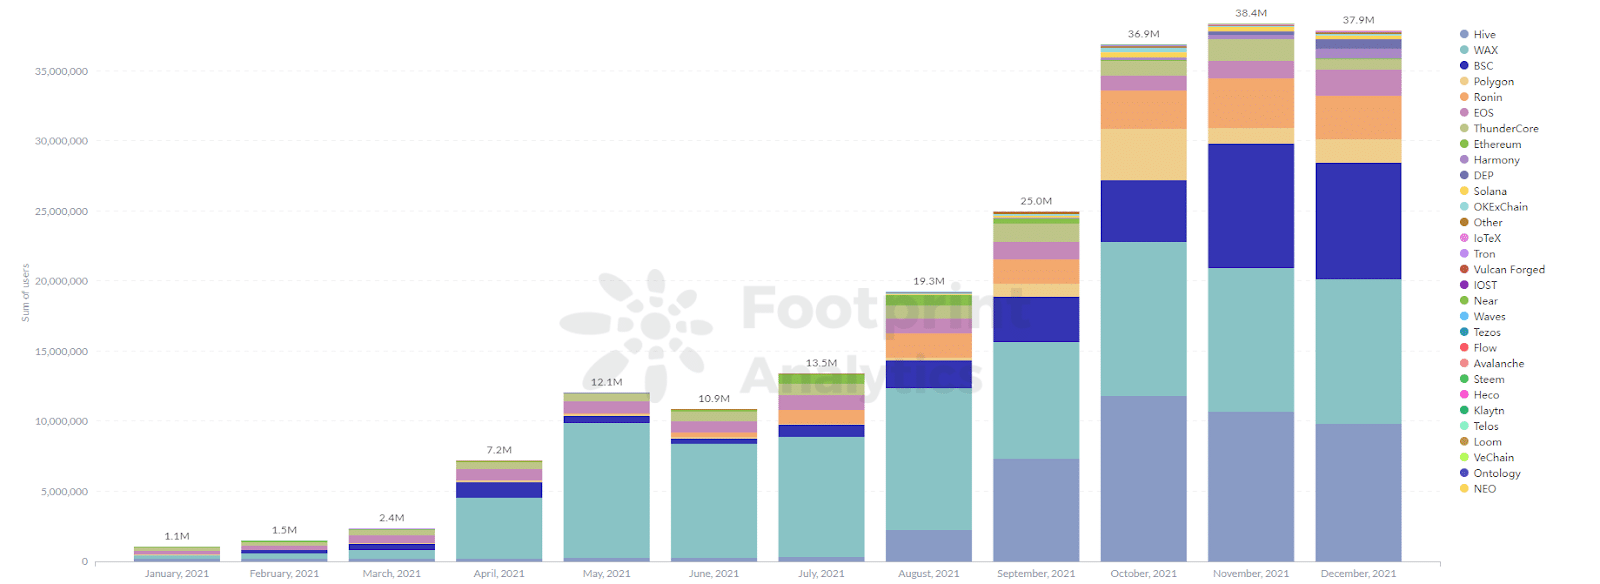 Footprint Analytics - Maandelijkse GameFi gebruikers van verschillende publieke ketens